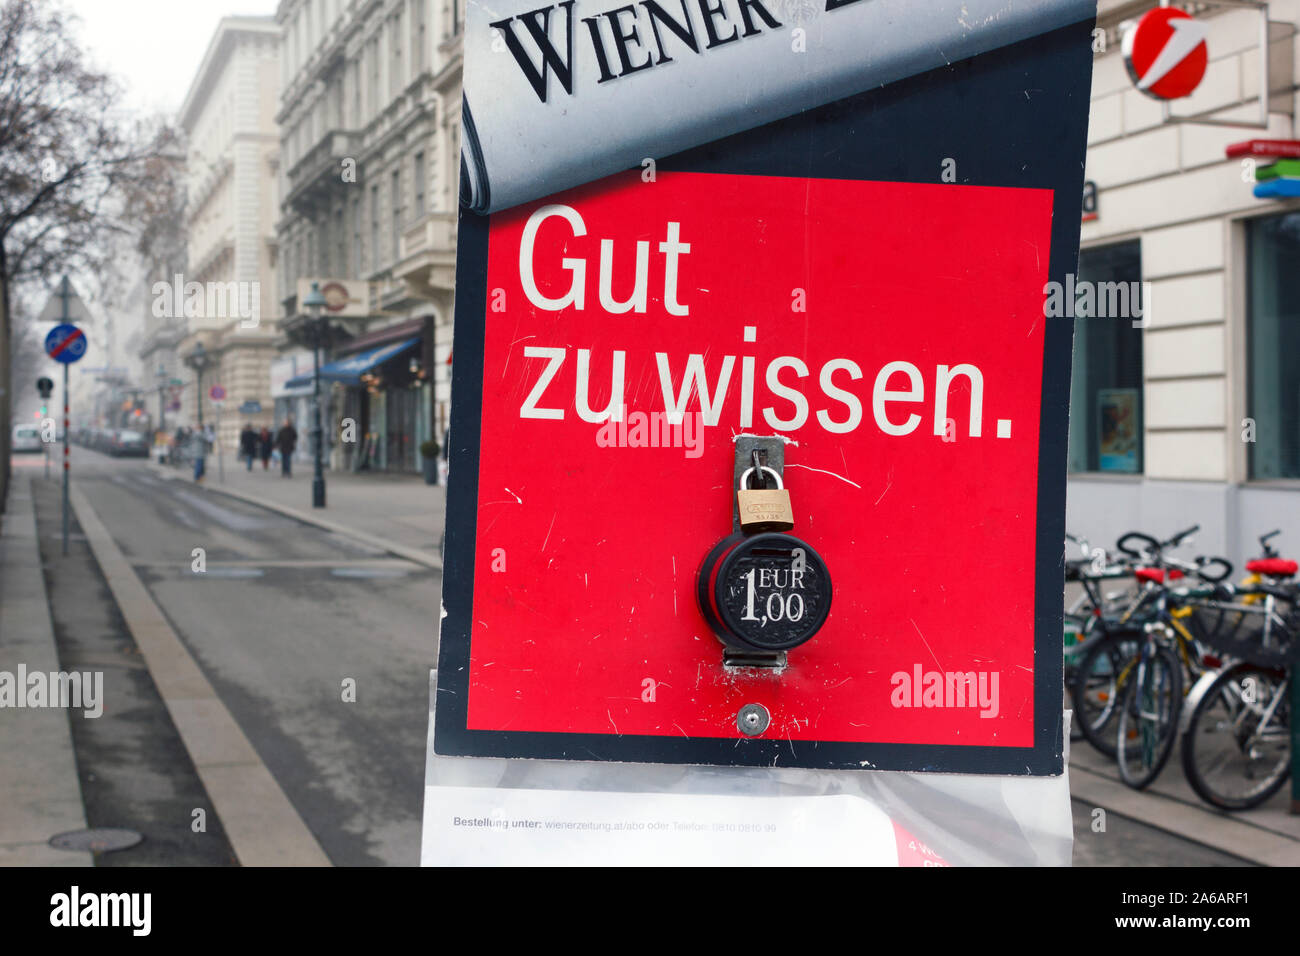 Les journaux allemands ?autrichienne est en libre service à Vienne, Autriche Banque D'Images